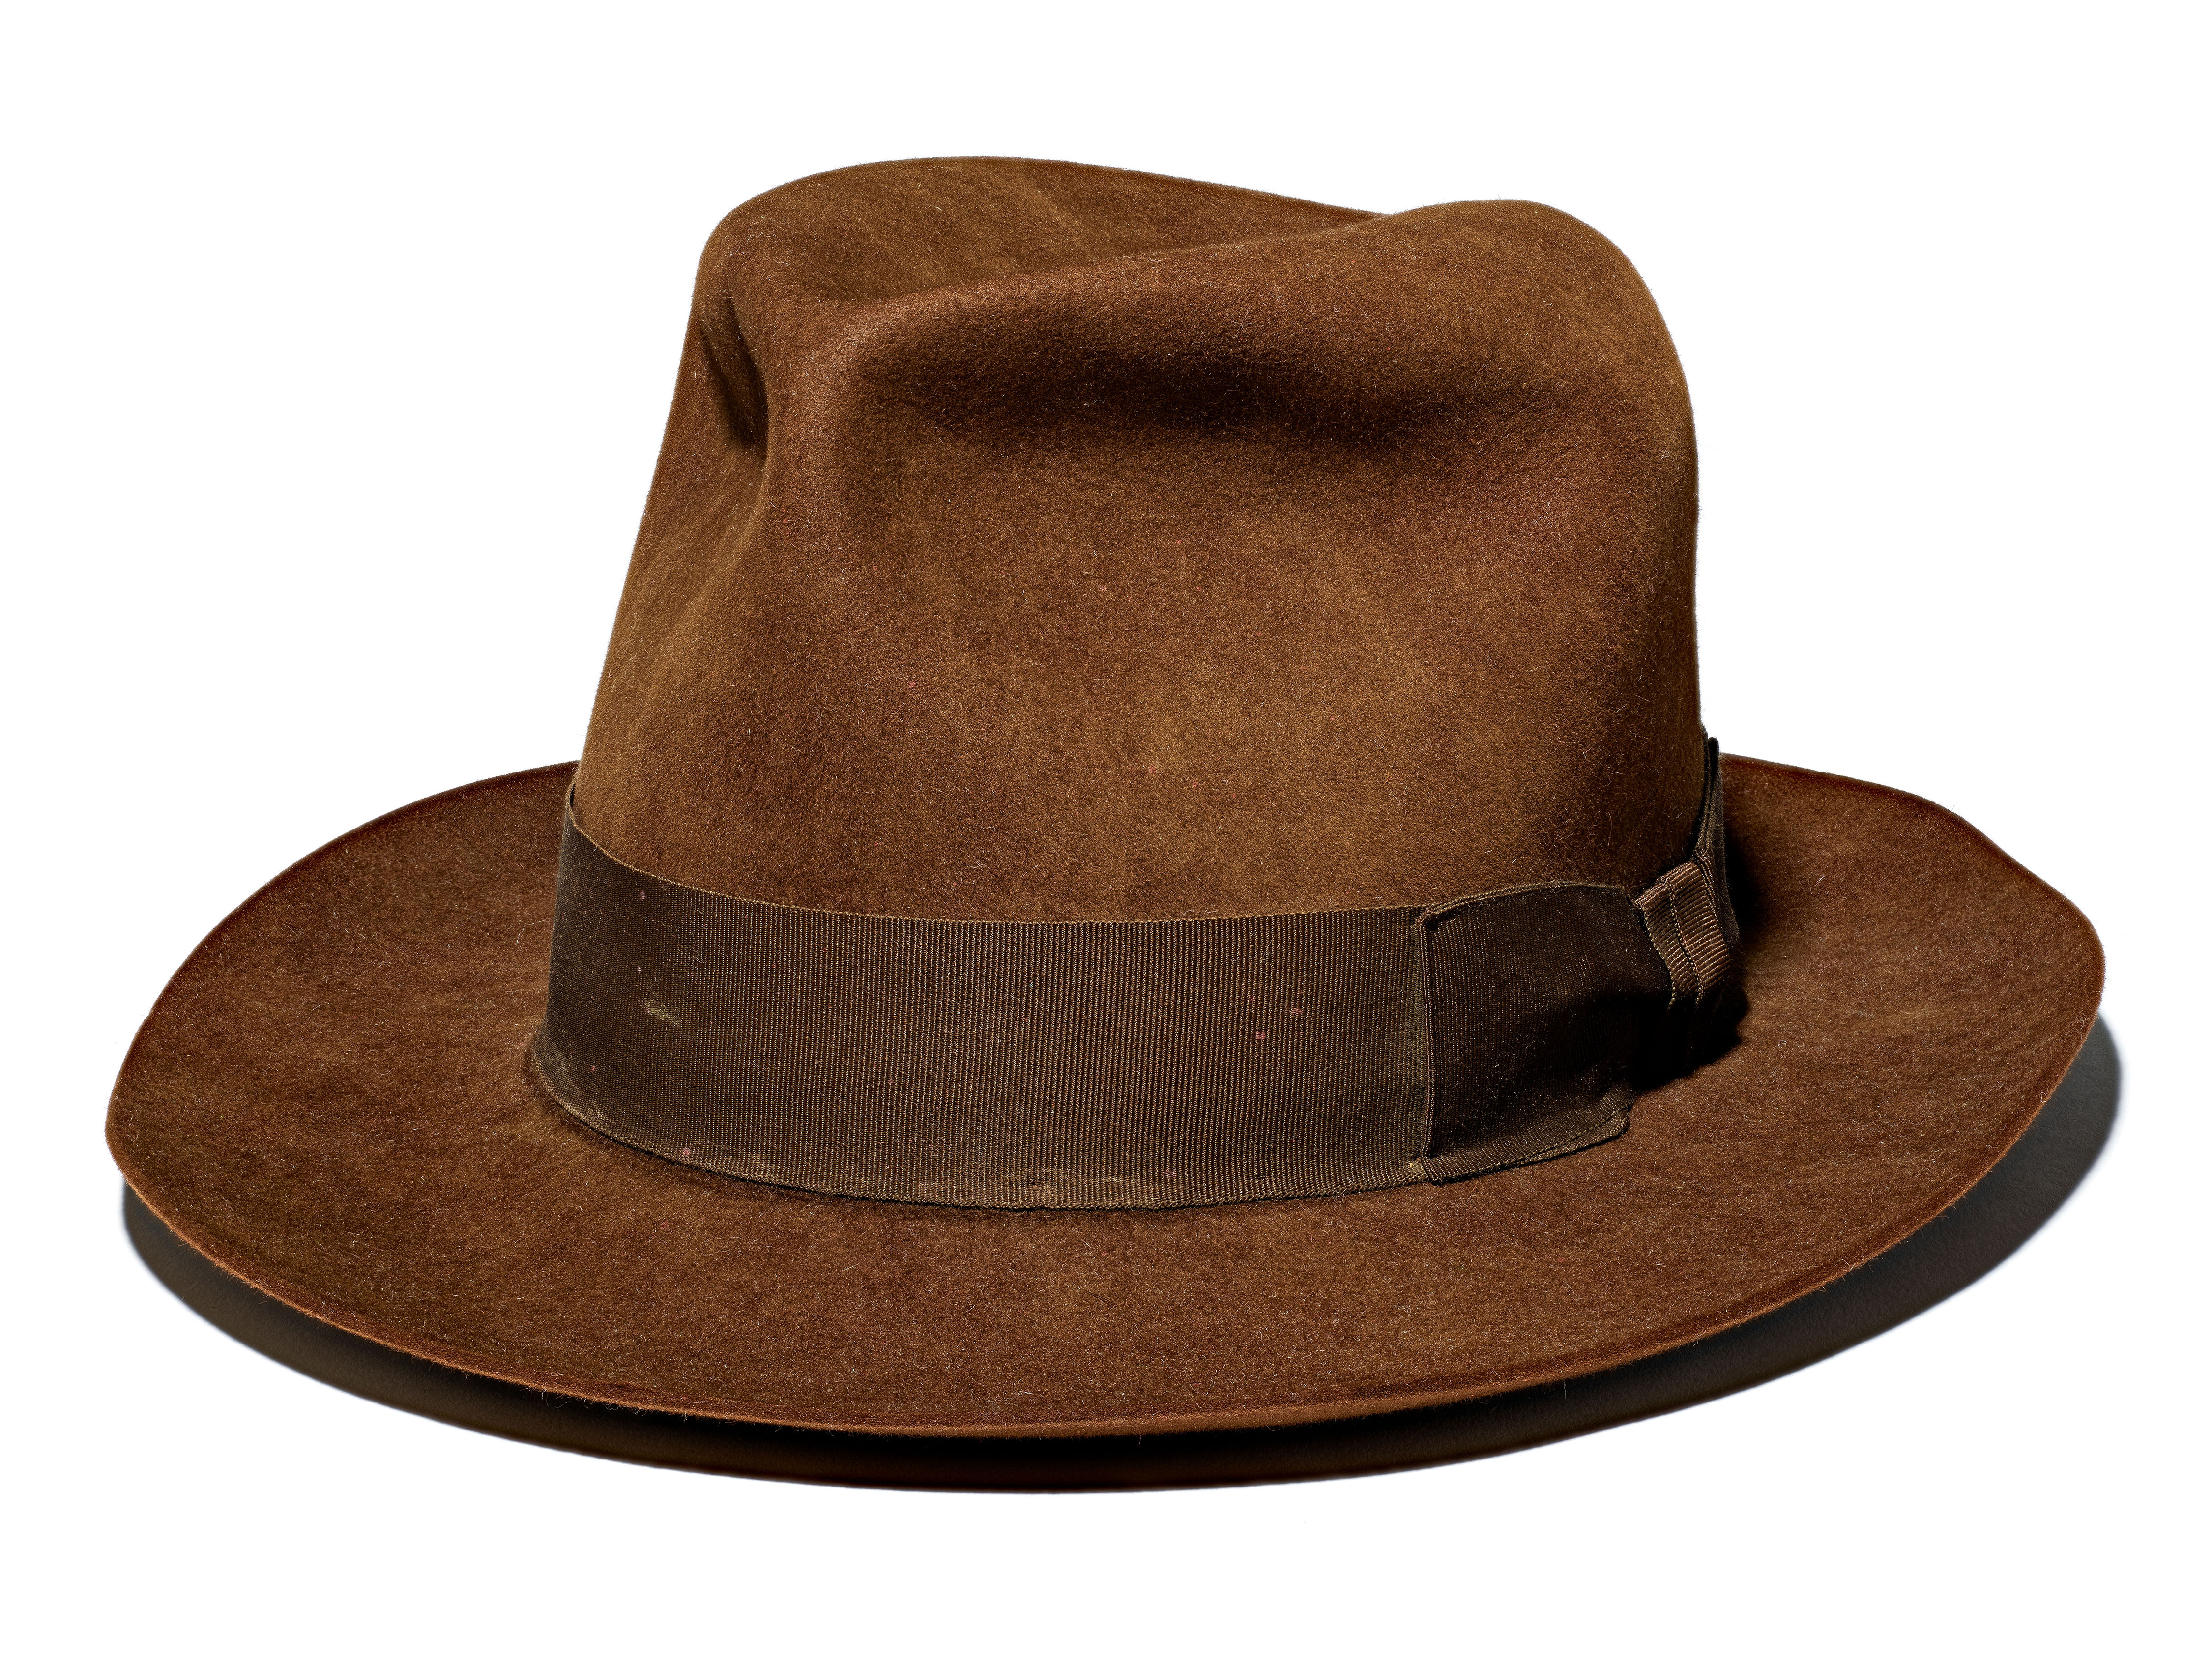 Indiana Jones Hat PNG - 50542